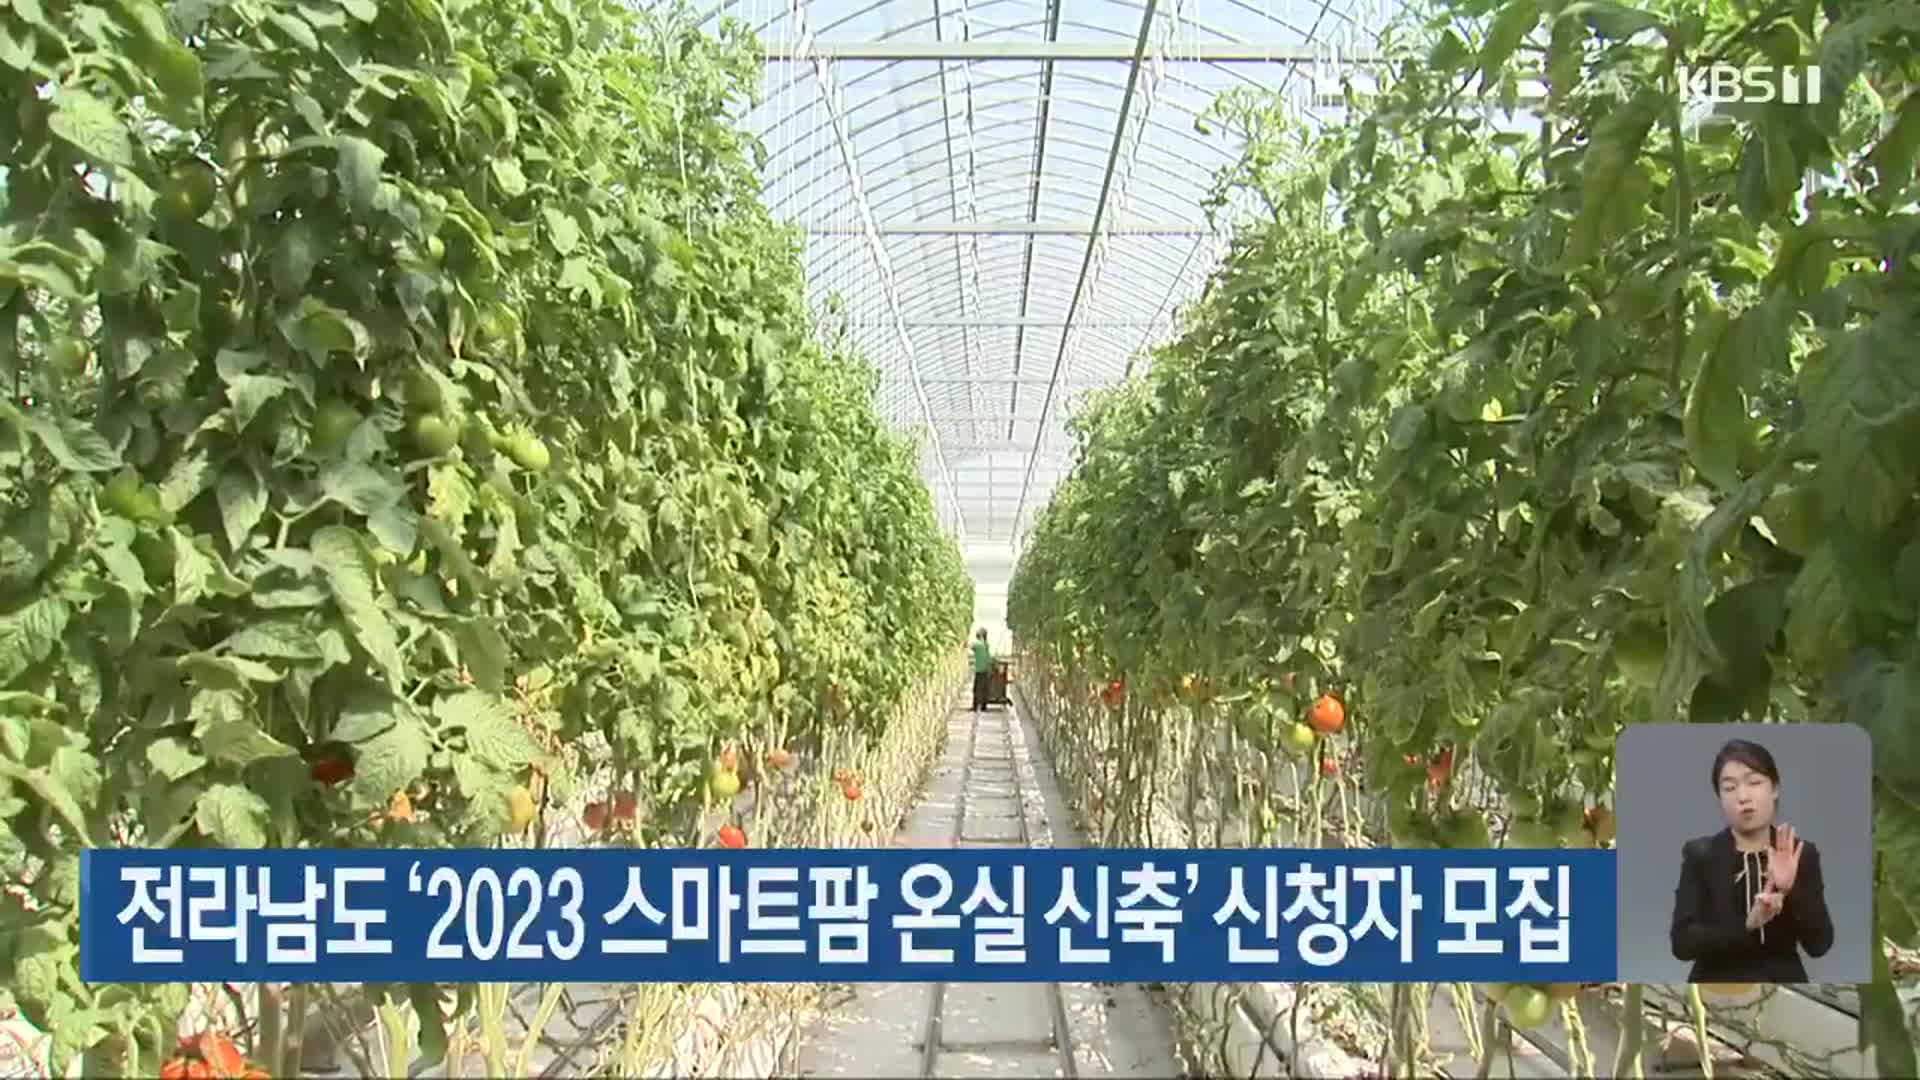 전라남도 ‘2023 스마트팜 온실 신축’ 신청자 모집